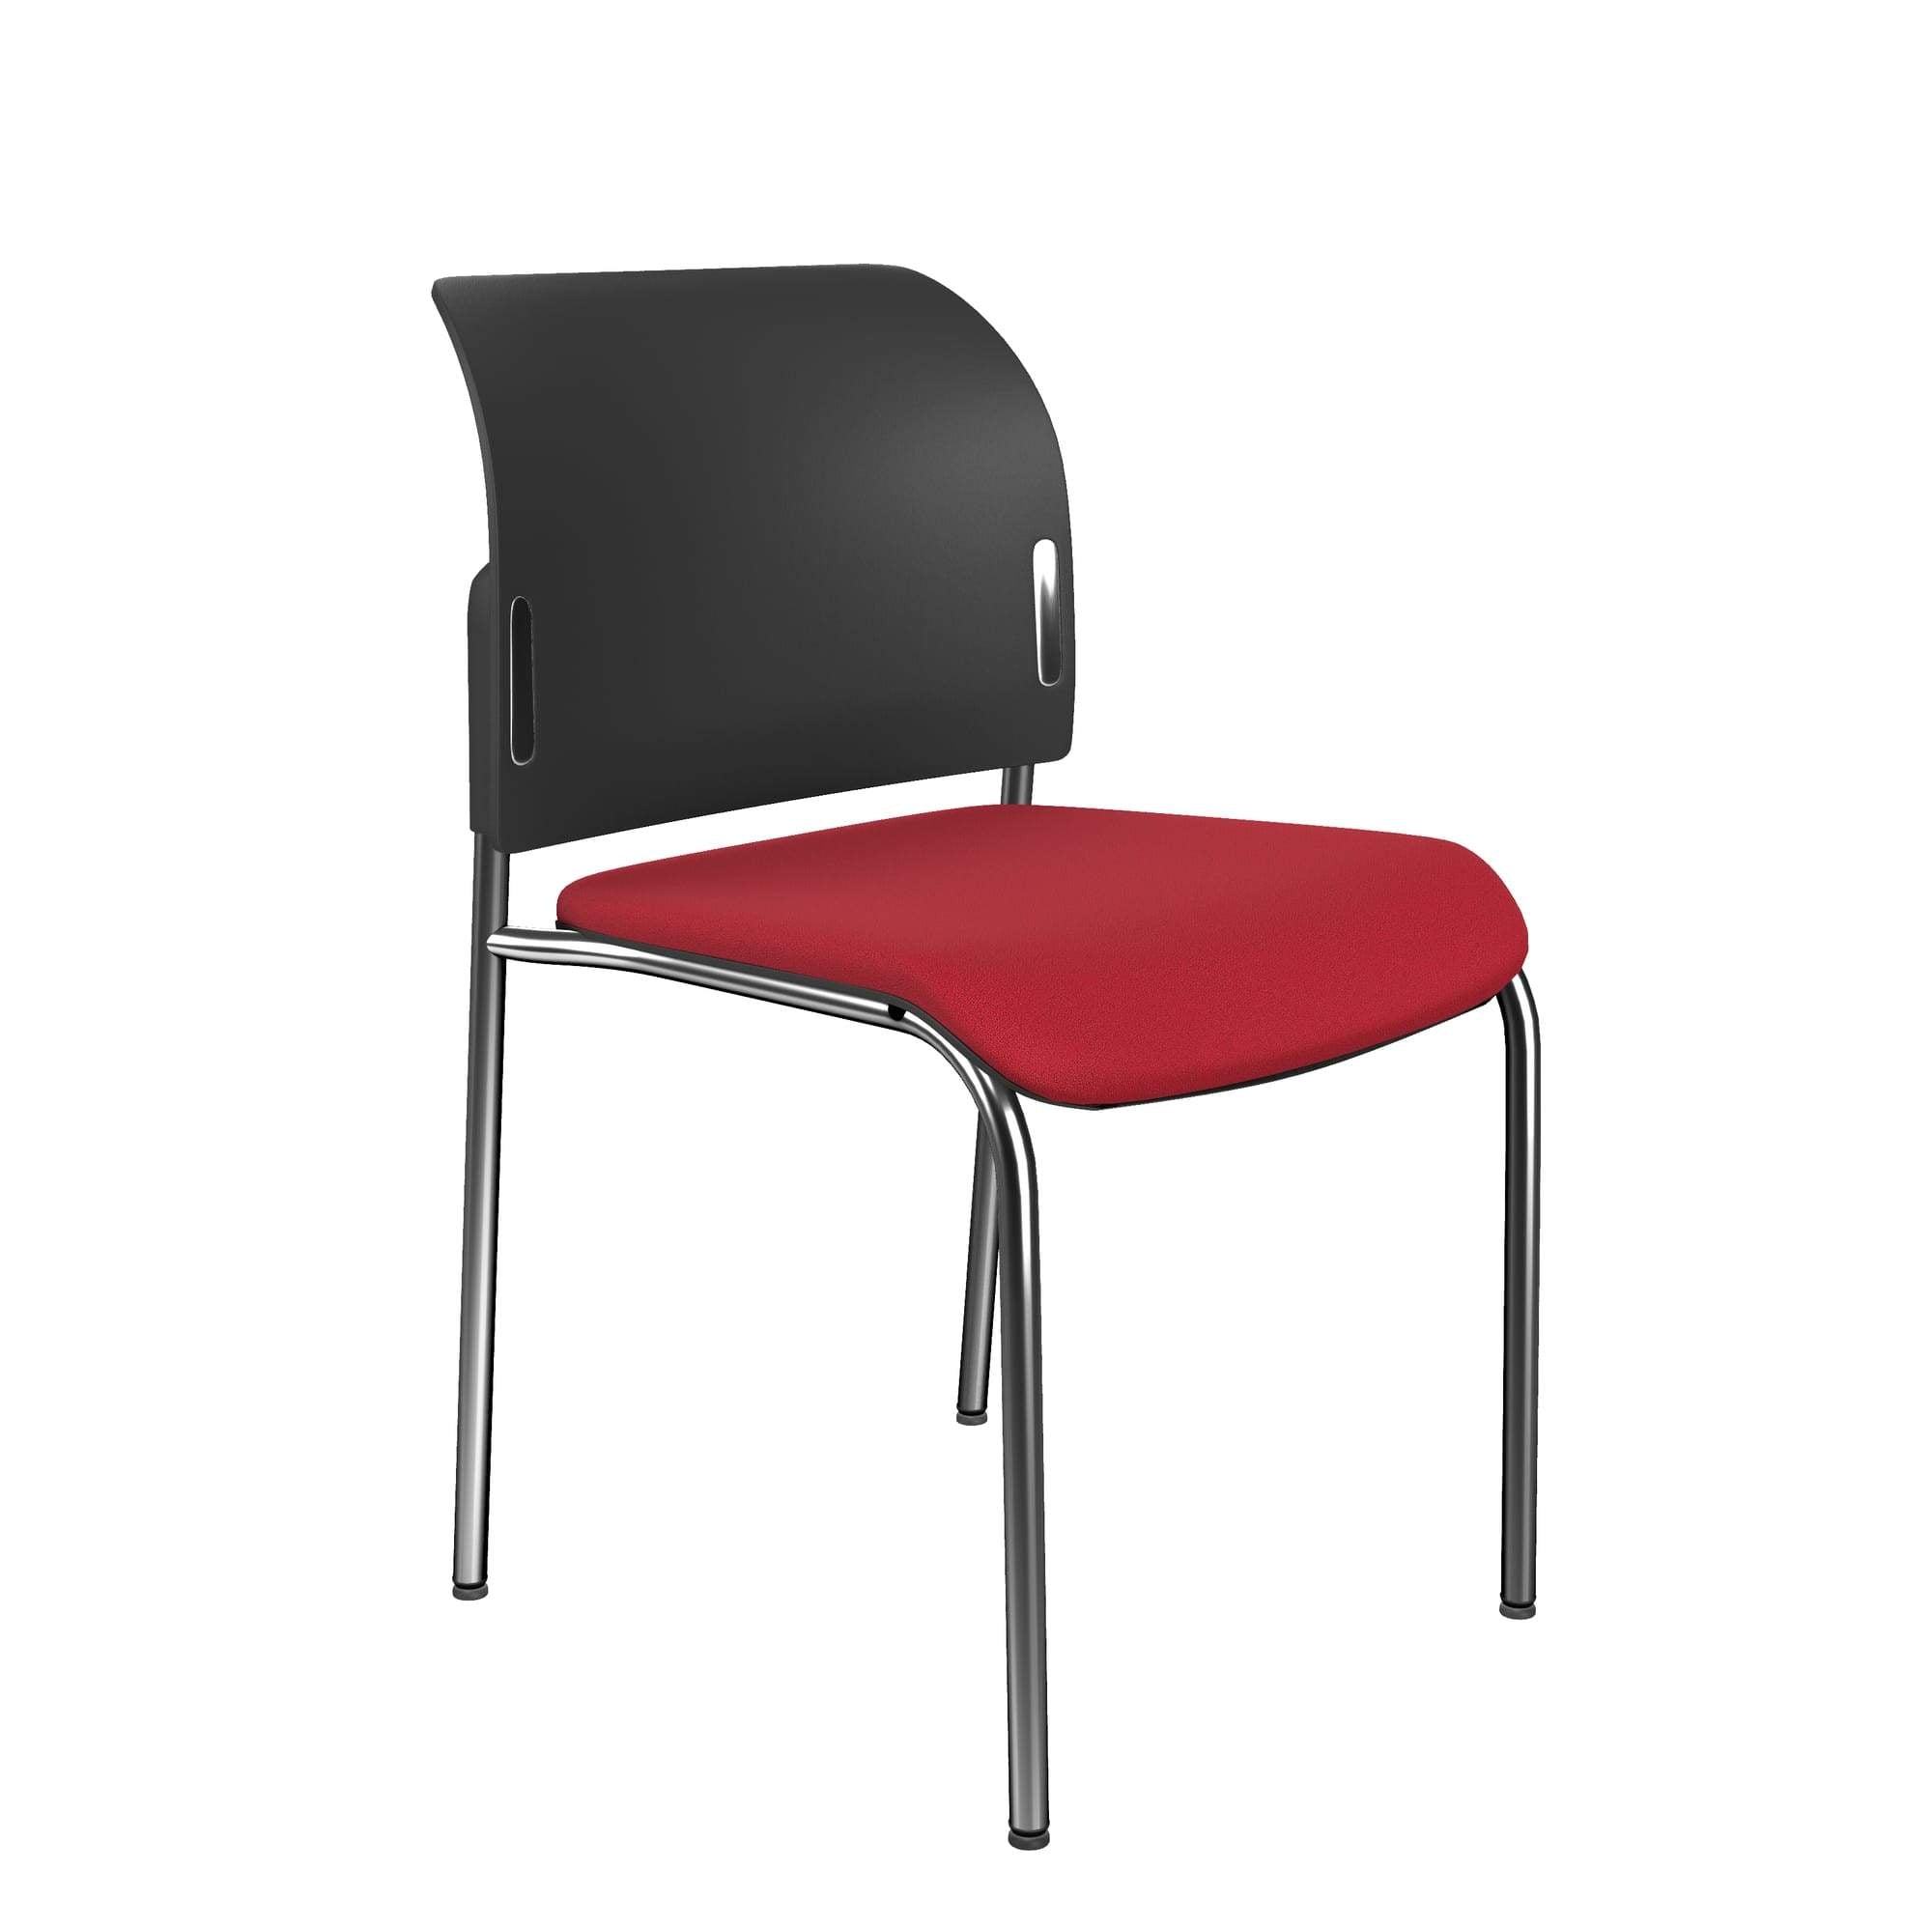 Bit Upholstered Seat and Plastic Backrest Chair, 4-Legged Frame - Model 560H